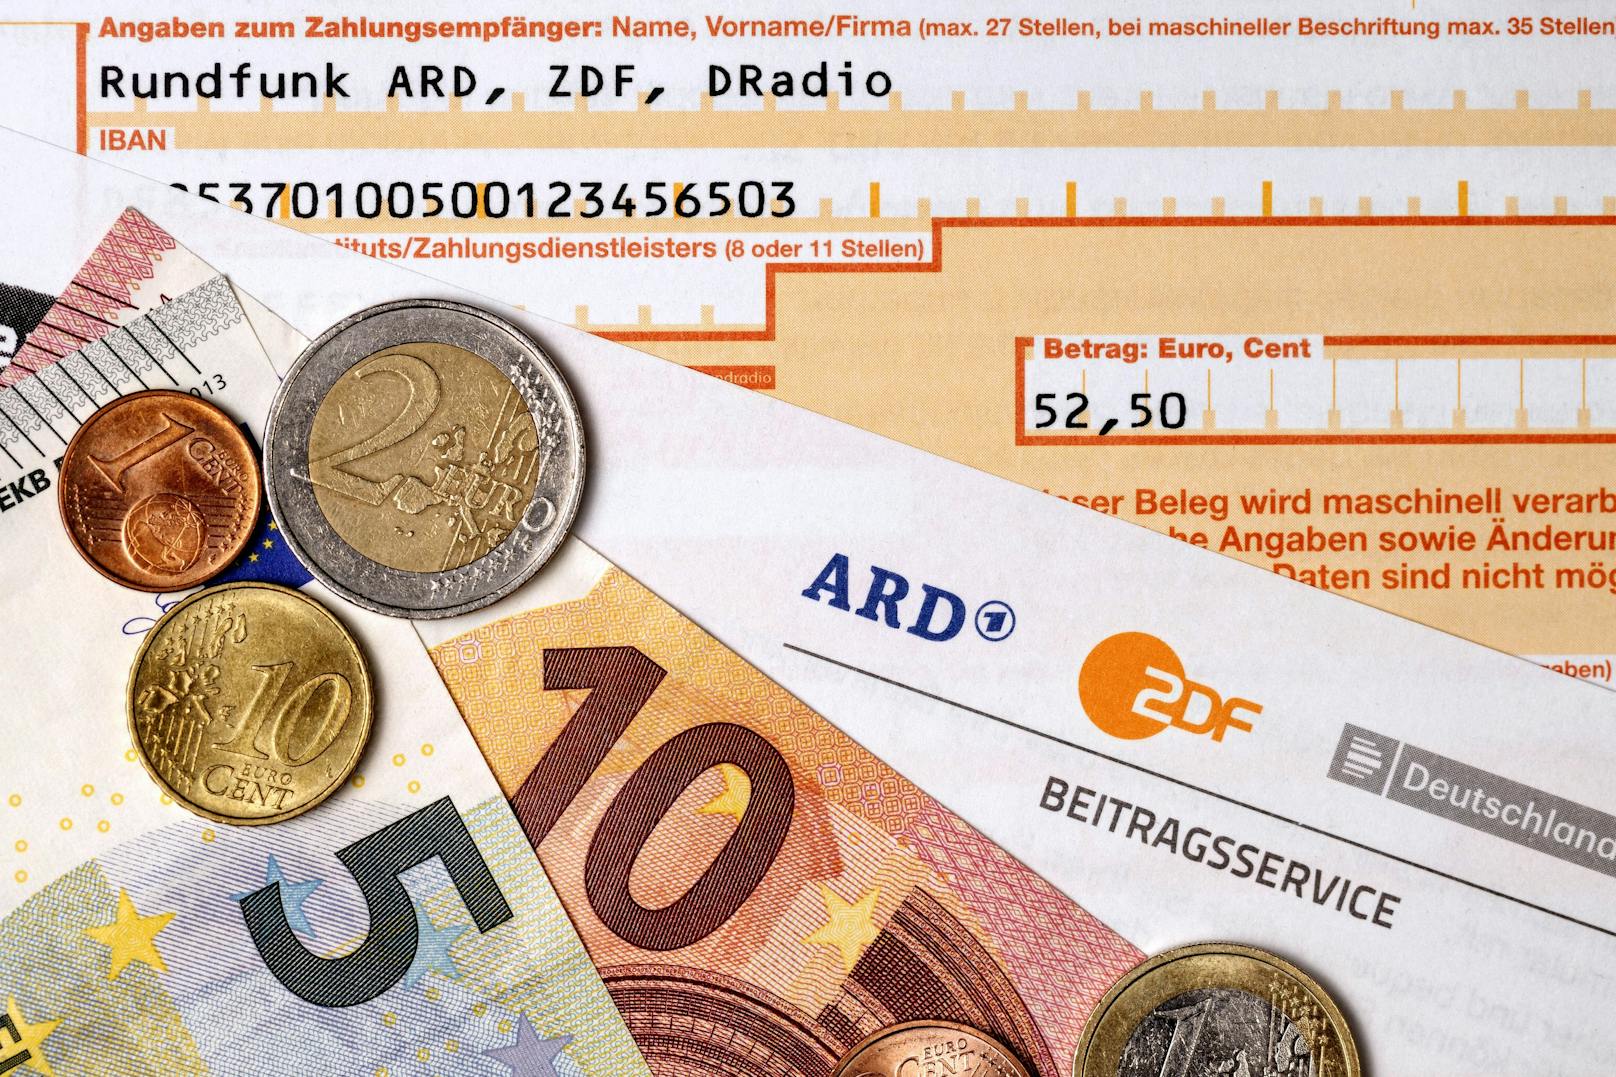 Der deutsche Rundfunkbeitrag soll bald von 17,50 Euro auf 18,36 Euro erhöht werden.